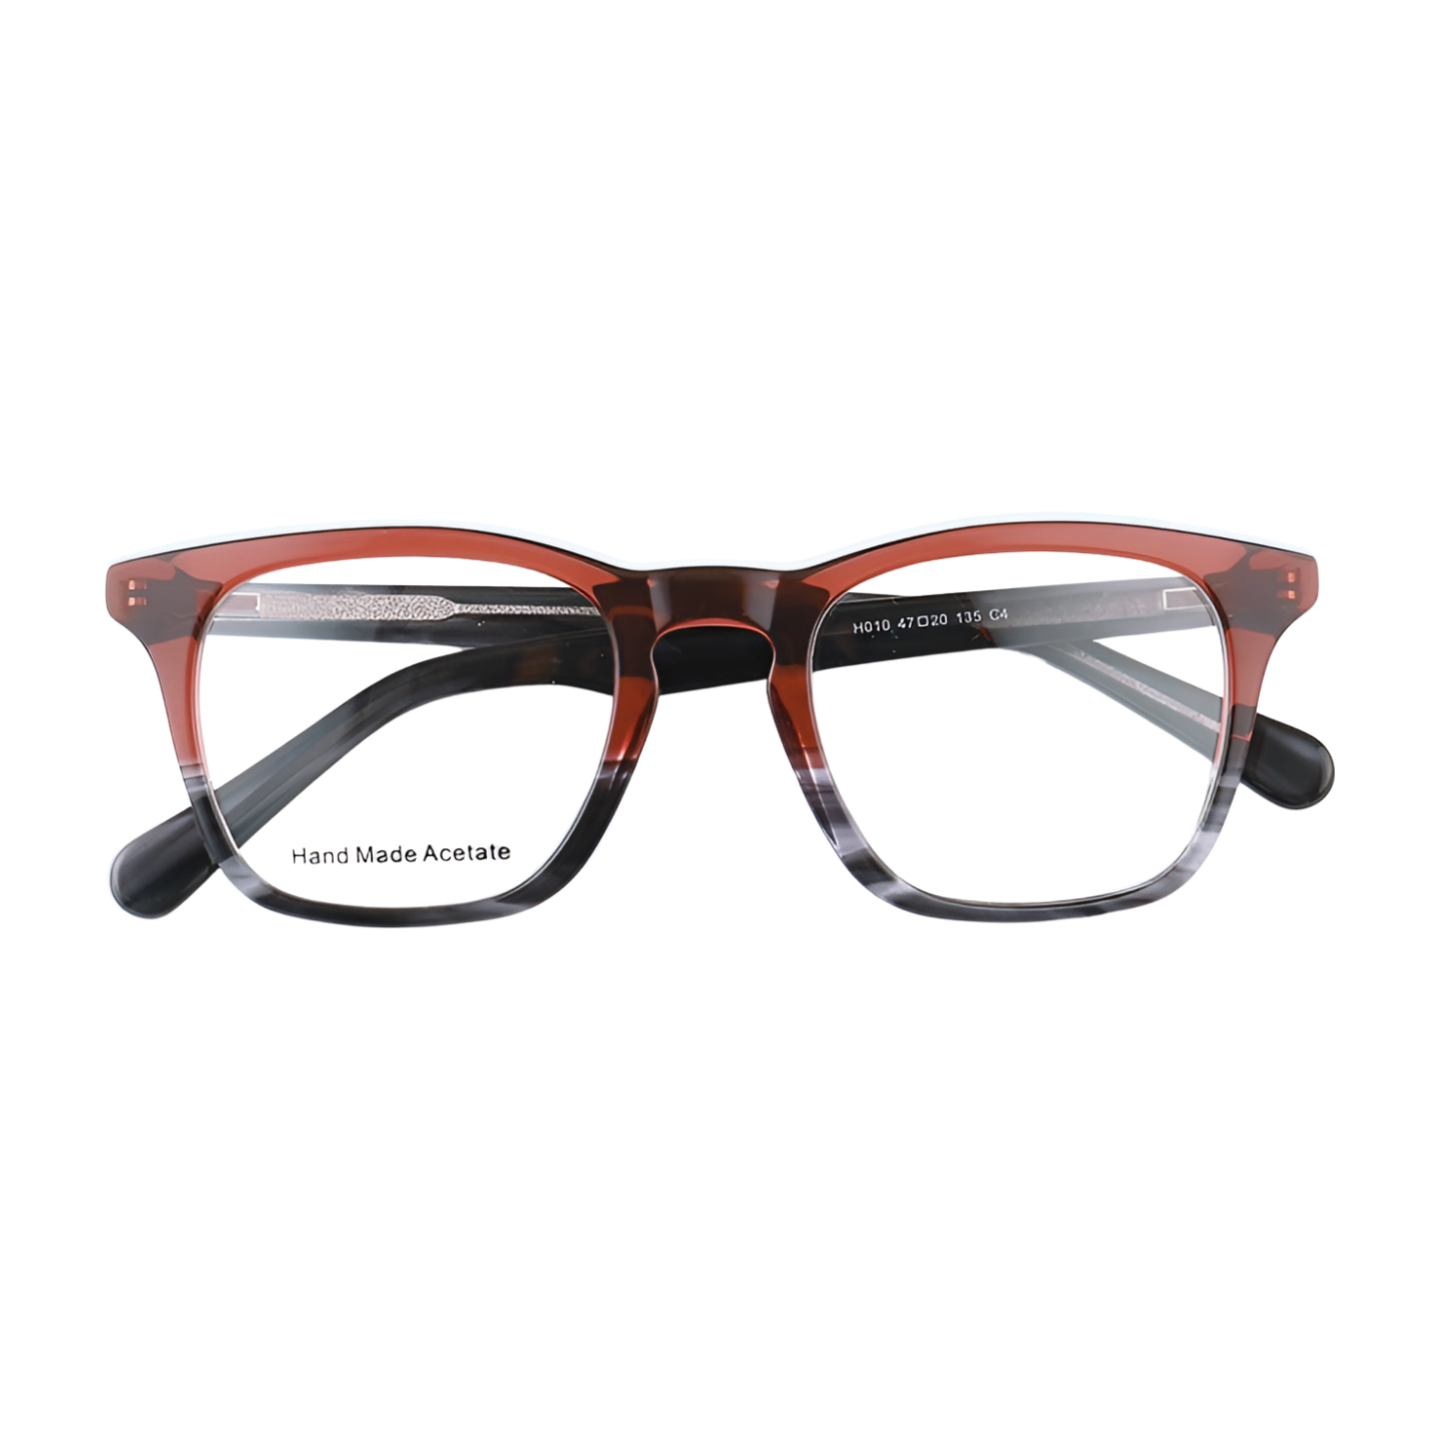 Wayfarer Full Rim Unisex Eyeglasses, Nova Unisex Eyeglasses Front View Brown Color Frame from VivGlasses